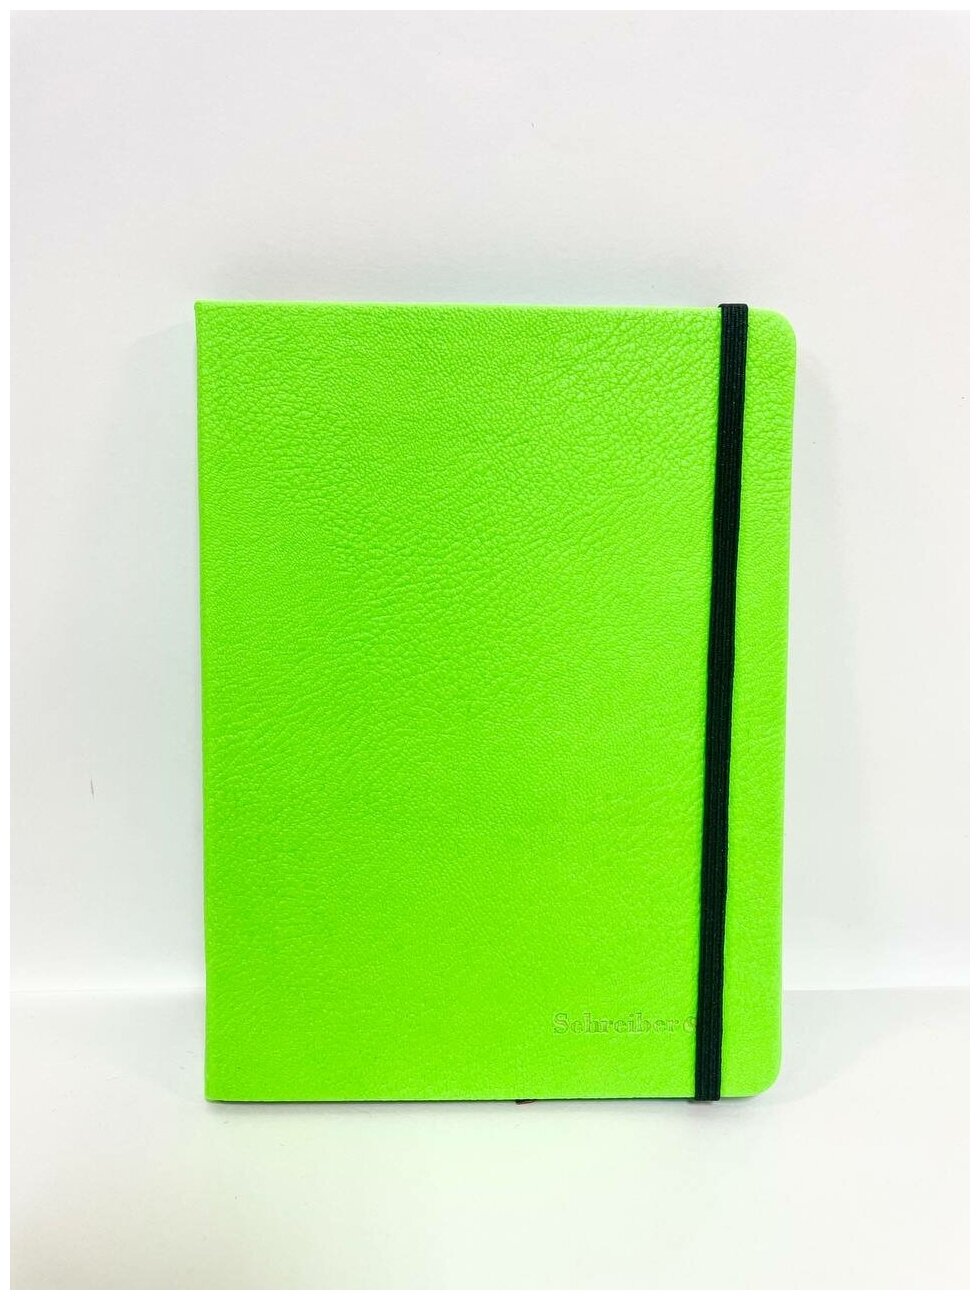 Бизнес-блокнот А6+/записная книжка на резинке Schreiber неон Зеленый (130х180 мм) в клетку, 200 страниц, обложка твердая под кожу